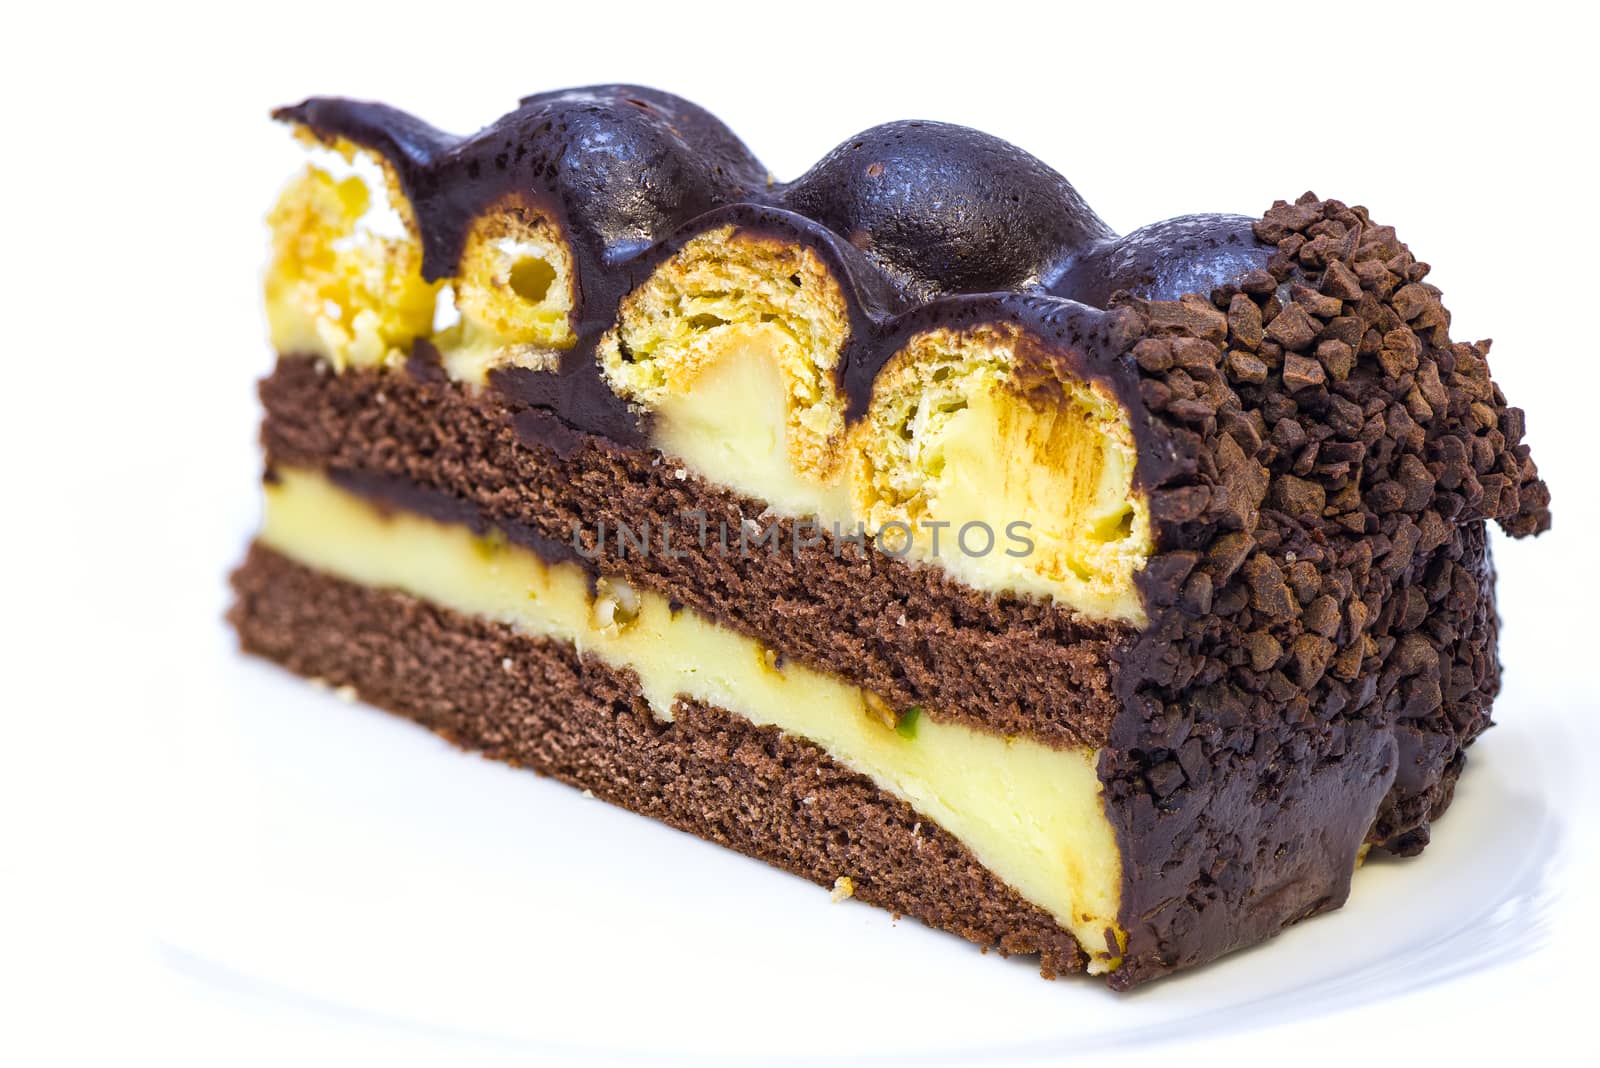 vanilla chocolate cake by p.studio66